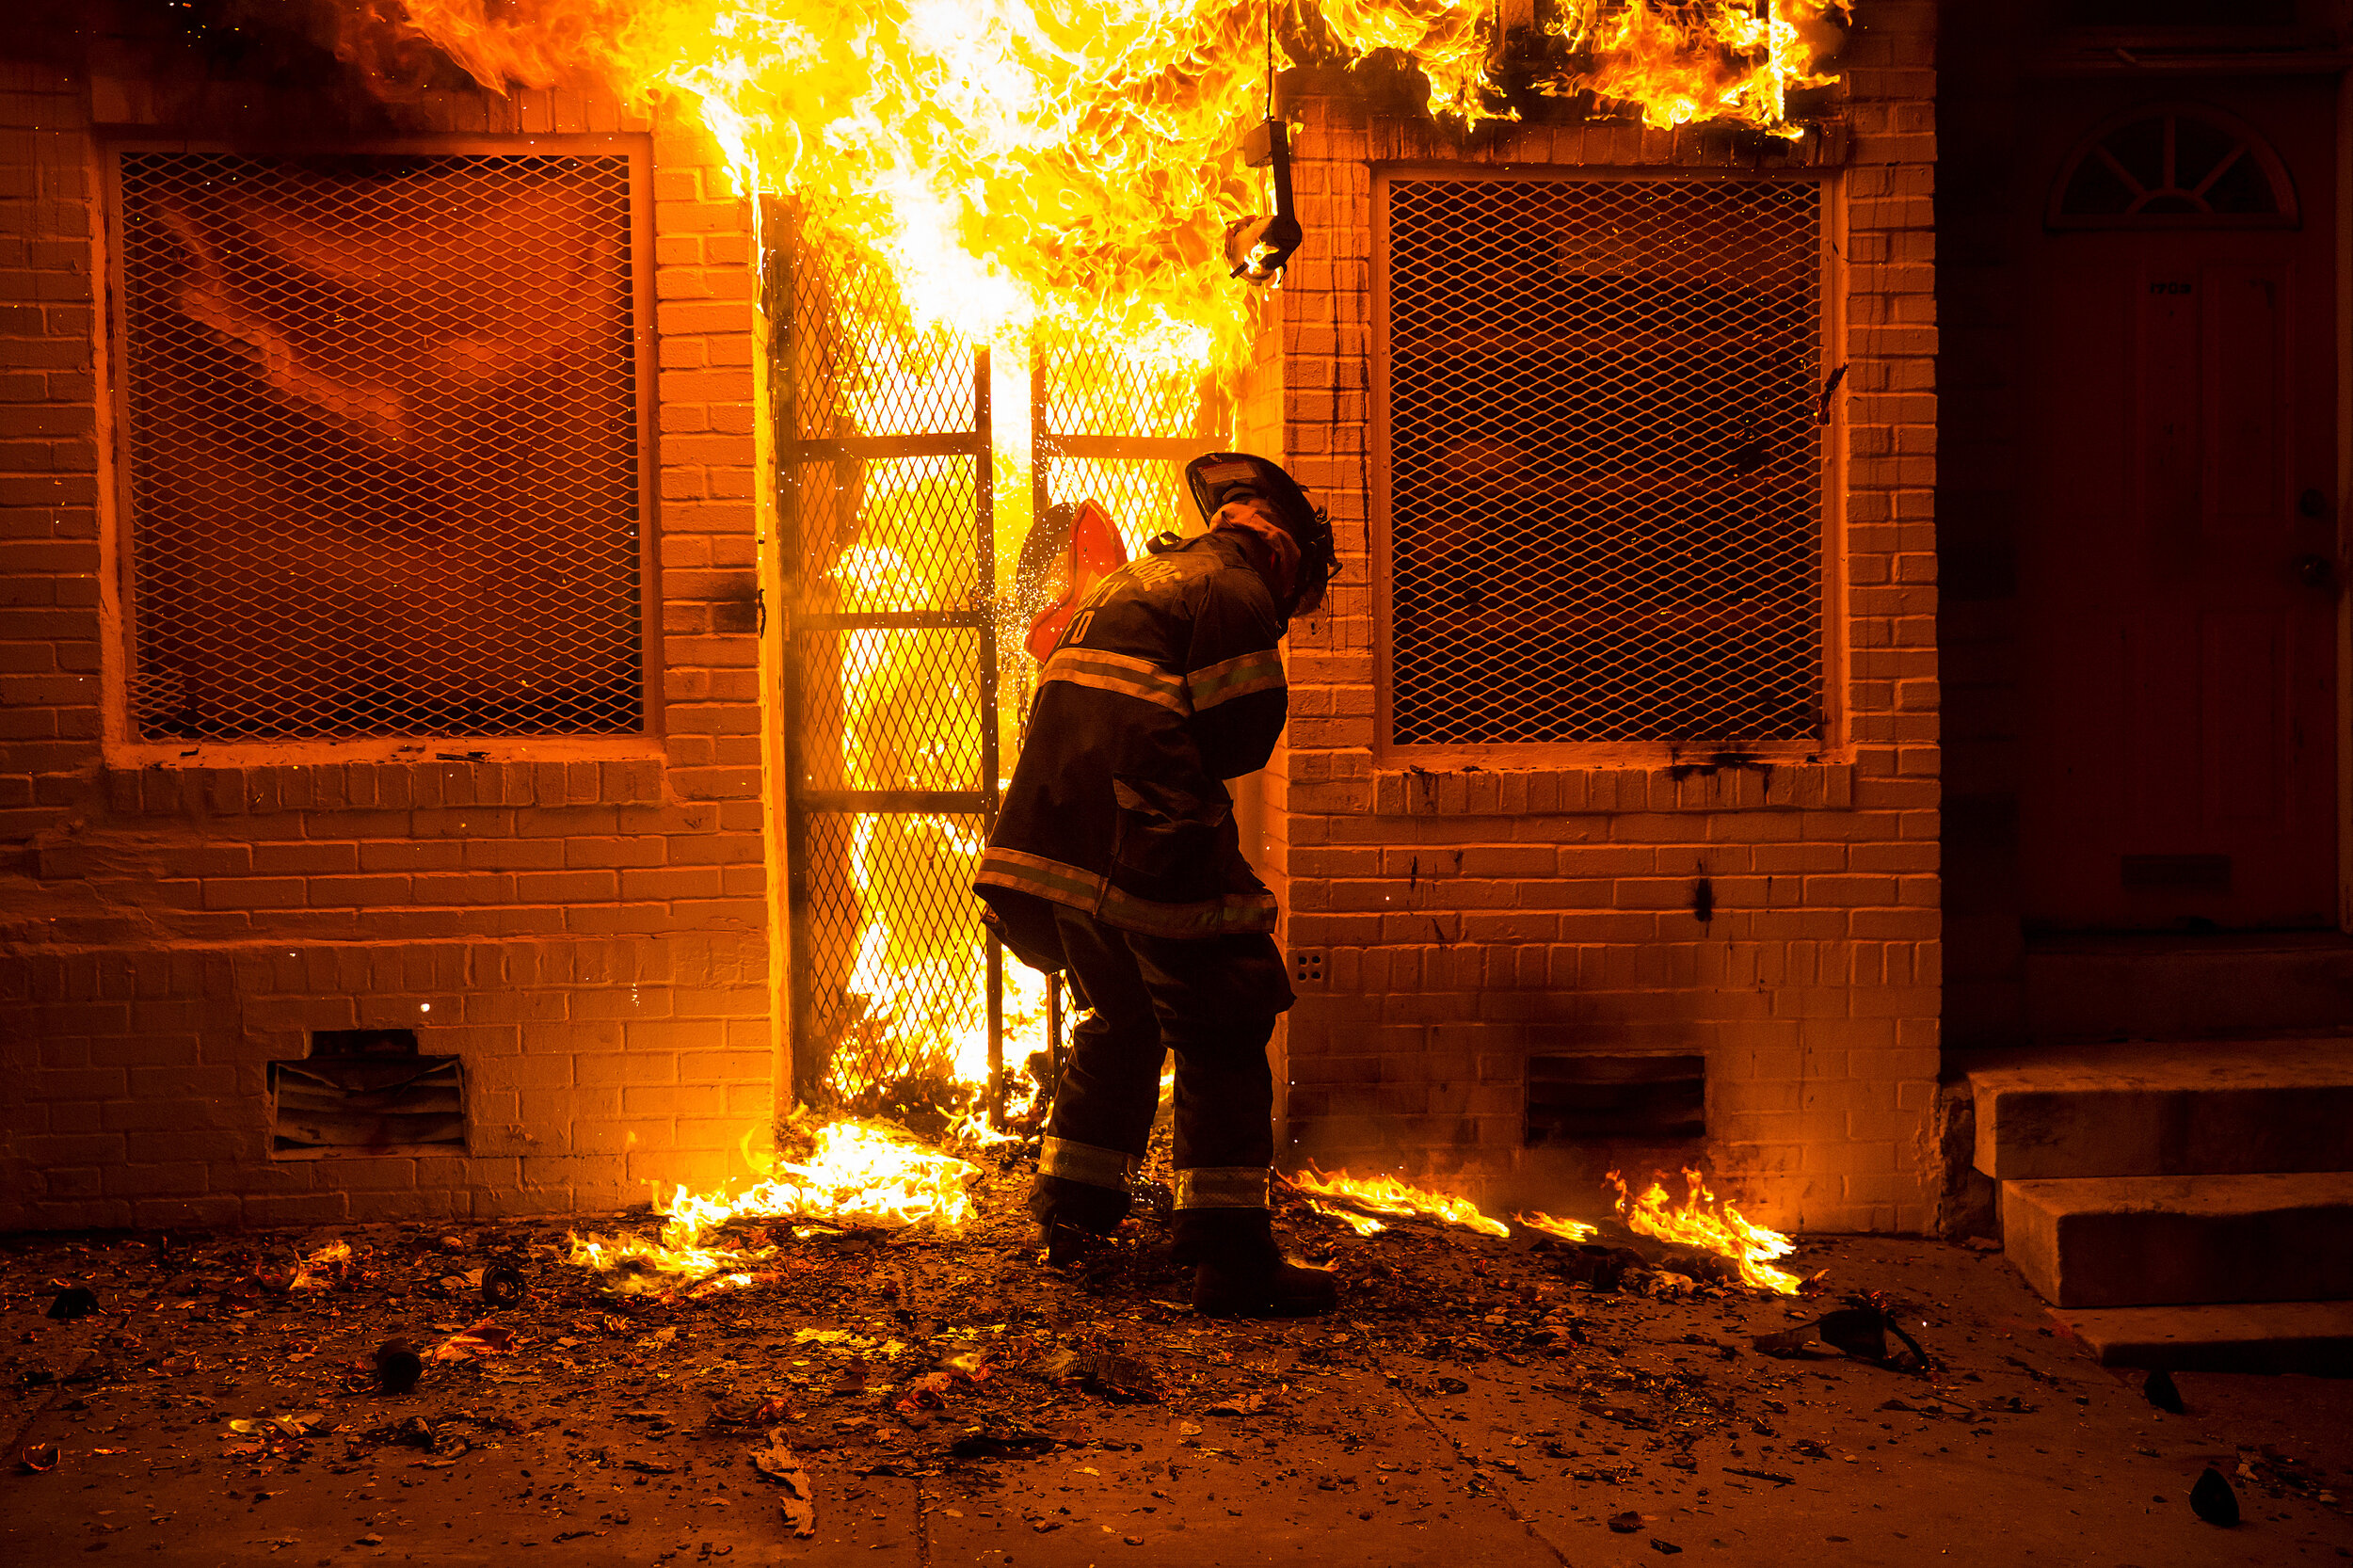   Civil unrest, Baltimore, MD. 2015  